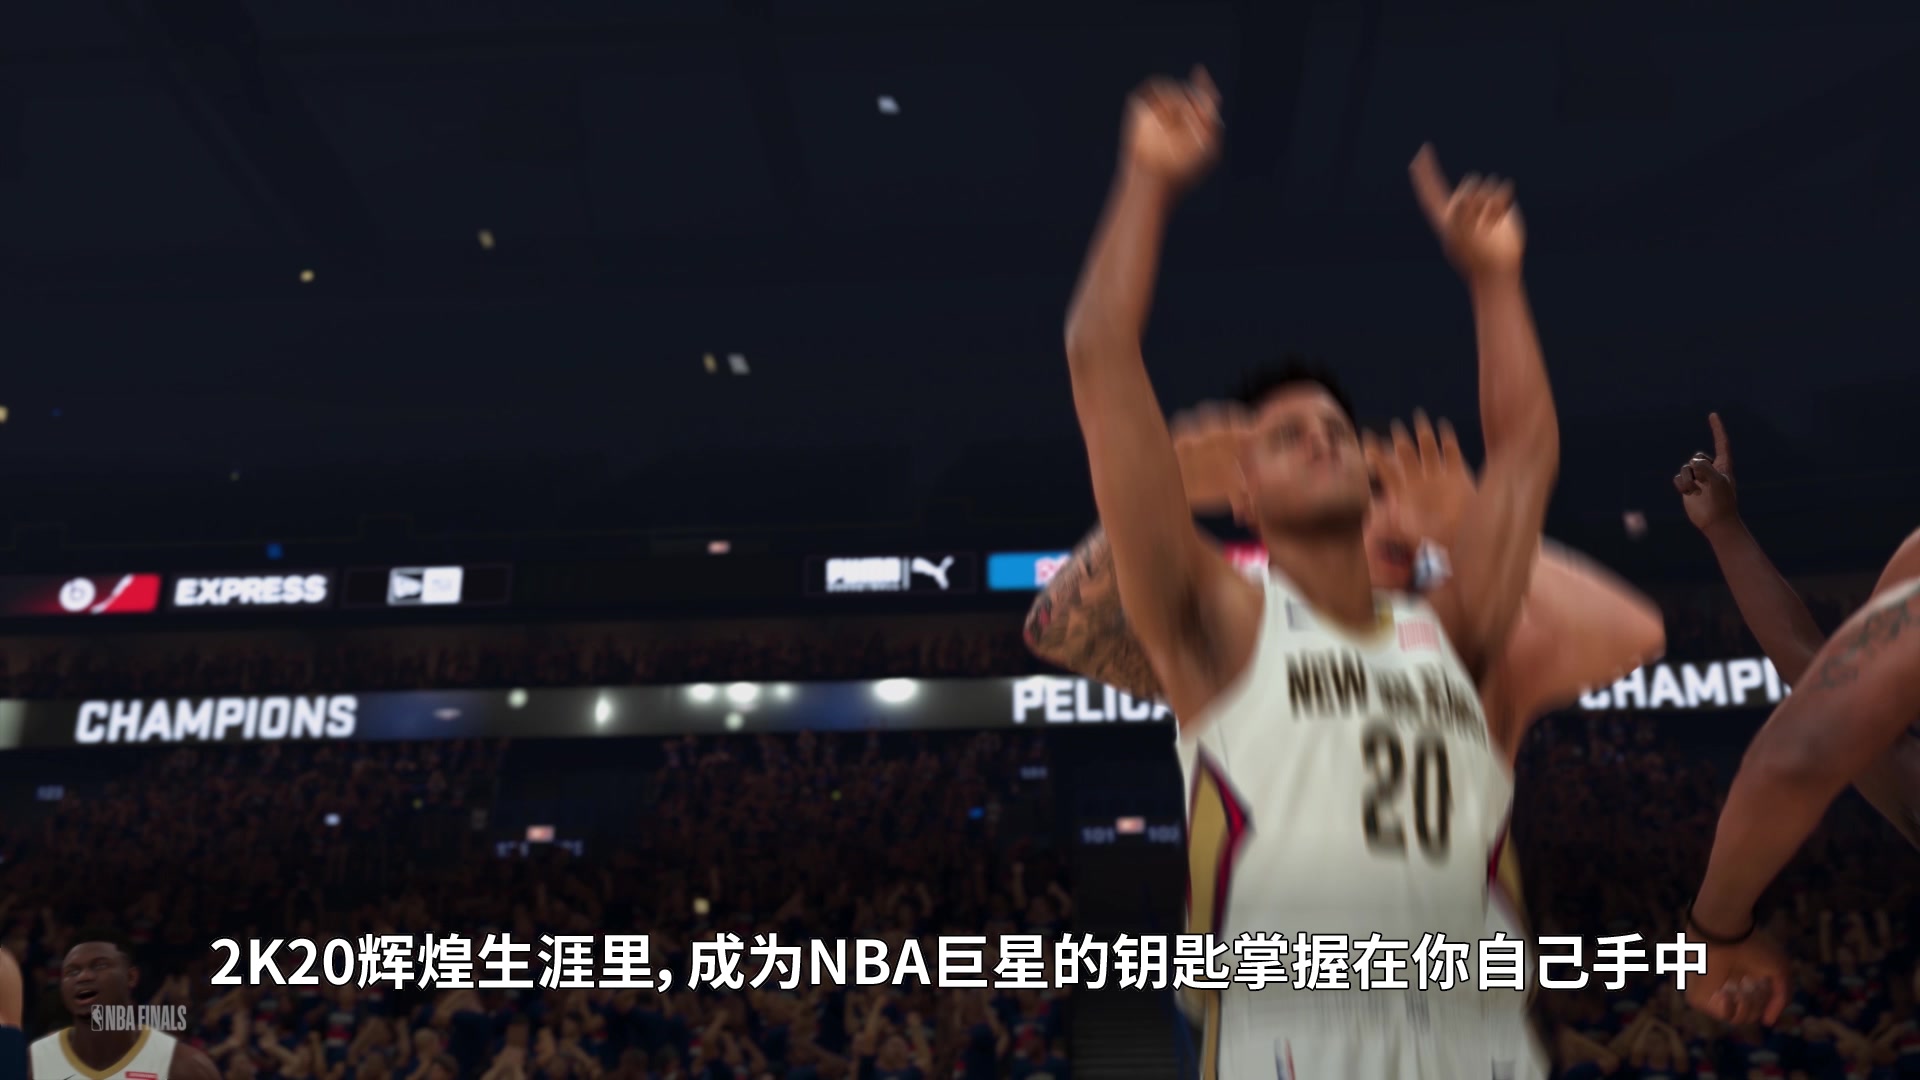 全新辉煌模式预告展示 《NBA 2K20》Demo试玩推出